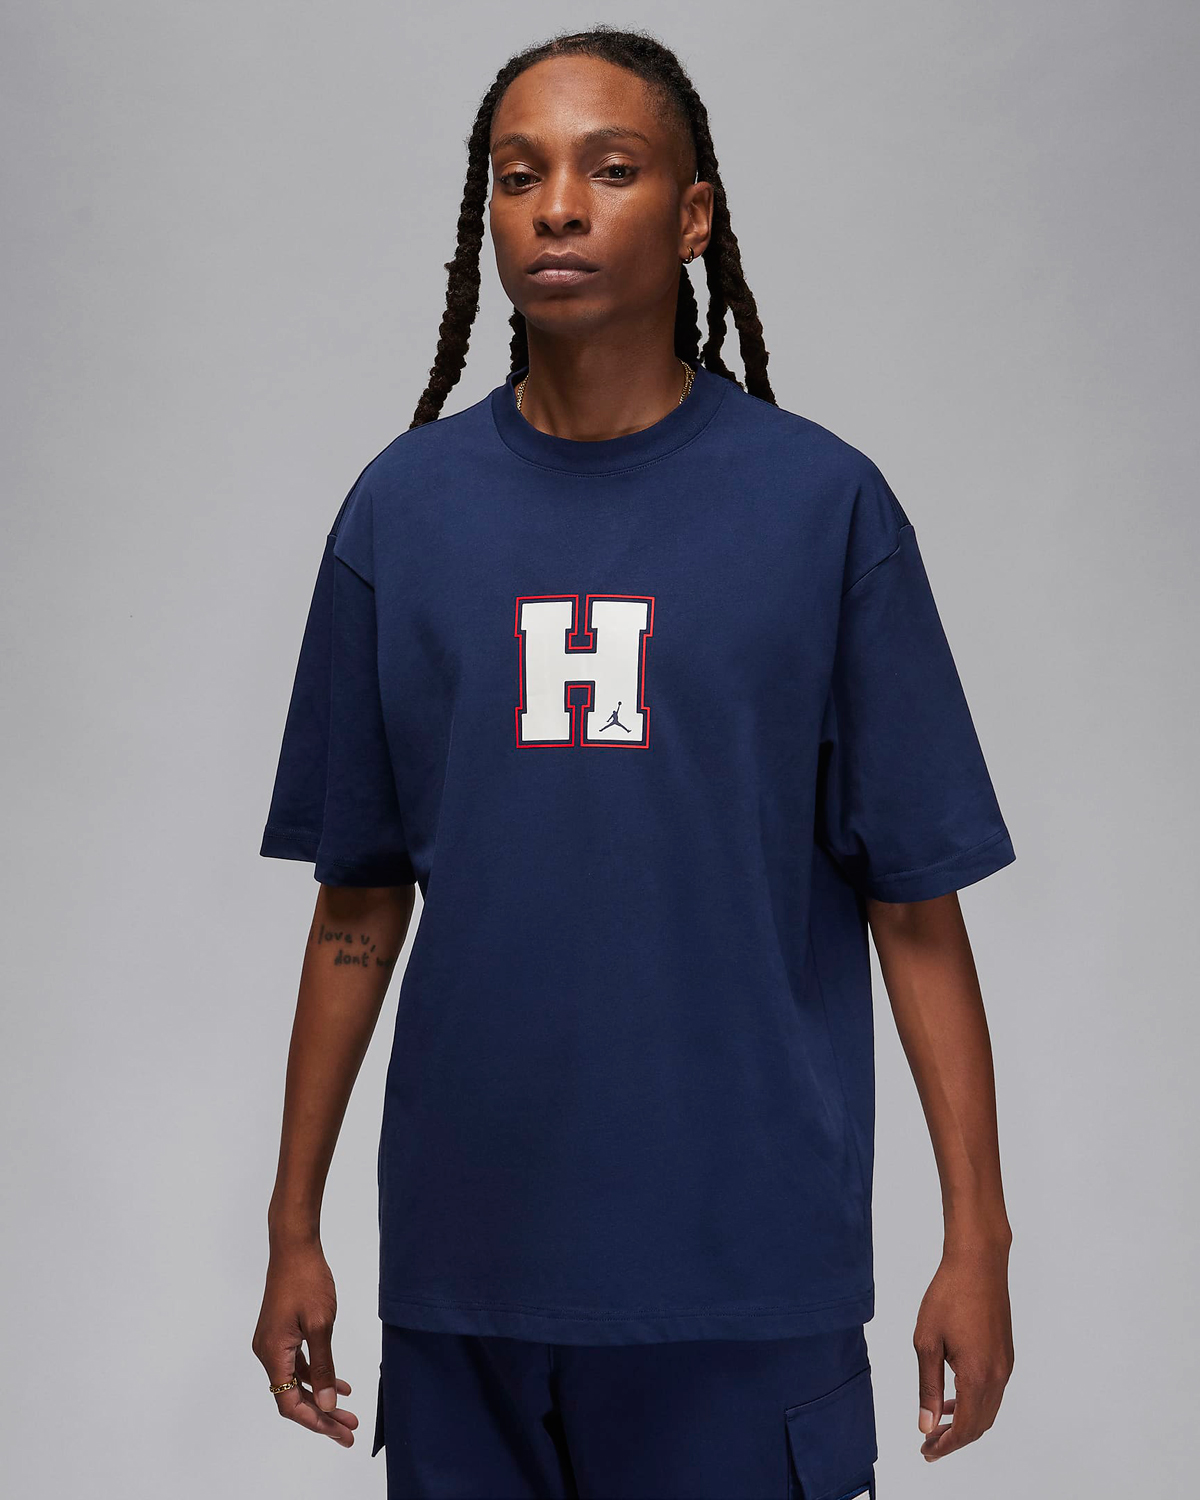 Jordan-Howard-University-T-Shirt-Navy-1